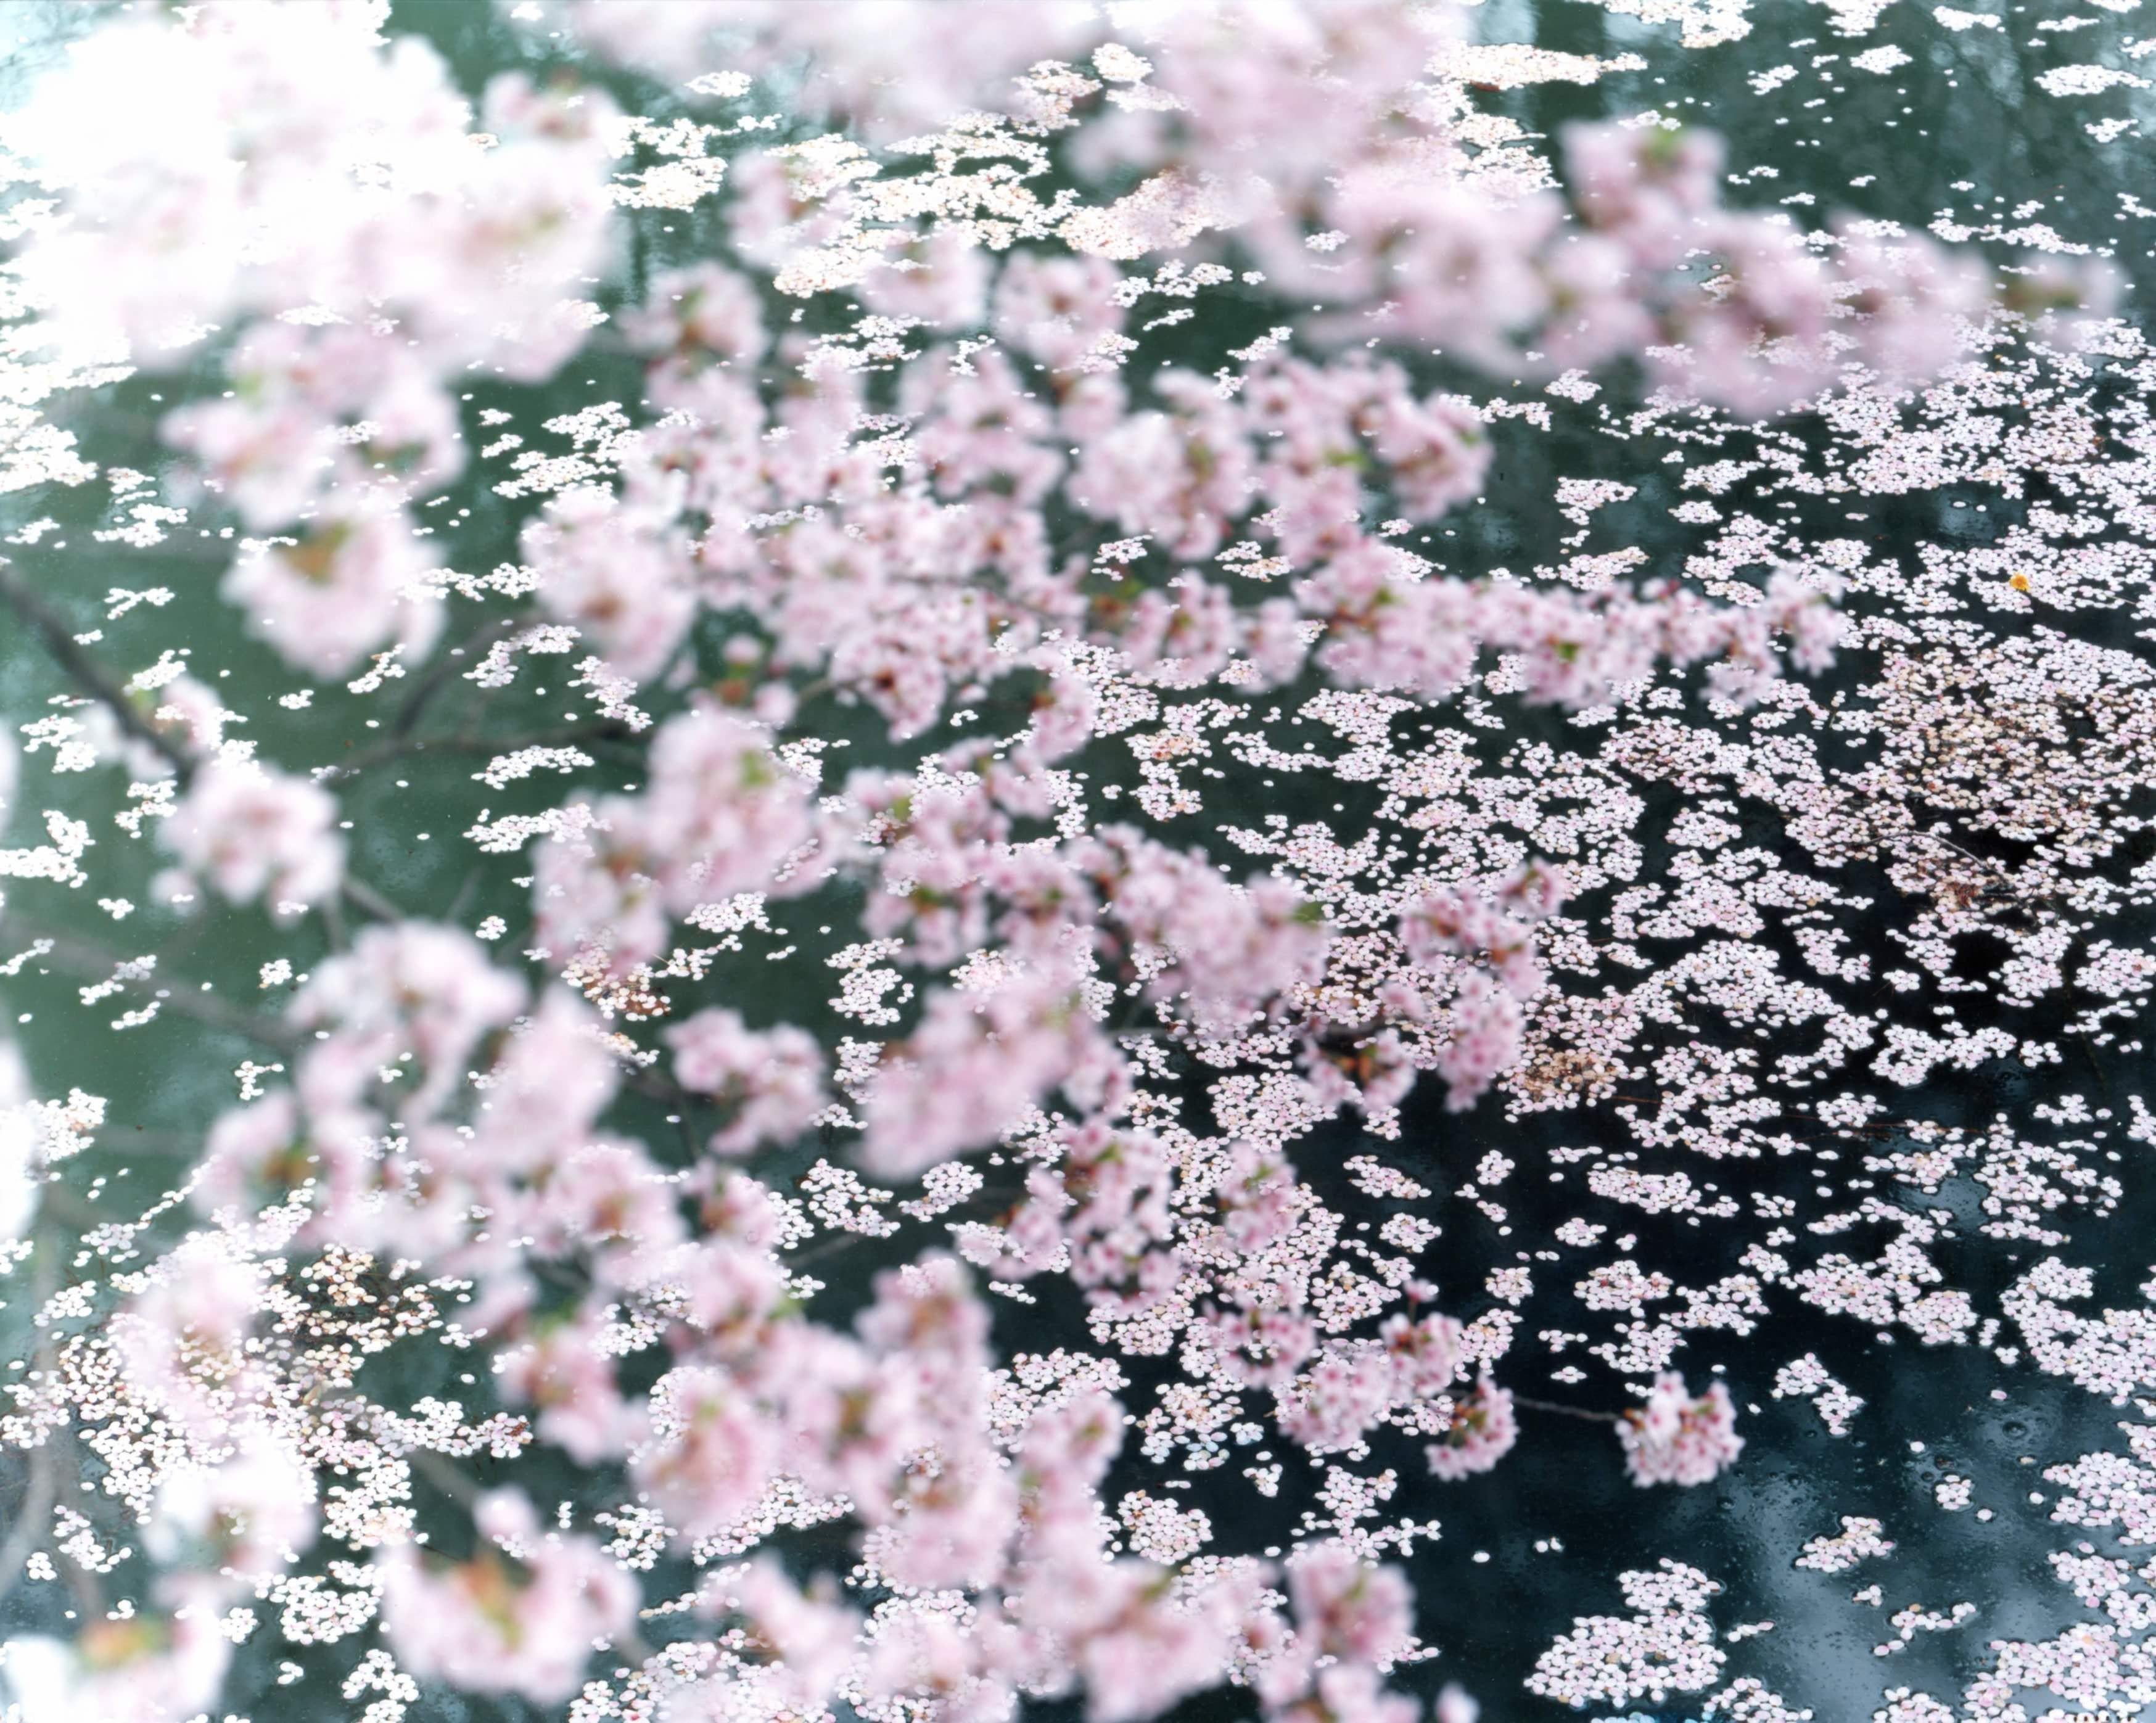 RISAKU SUZUKI (*1963, Japon)
SAKURA 10,4-72
2010
Tirage chromogène
Feuille 120 x 155 cm (47 1/4 x 61 in.)
Edition de 5 ; Ed. no. 3/5
Encadré

La célébration de la Sakura (terme japonais pour "cerisiers en fleurs") commence au début du printemps et